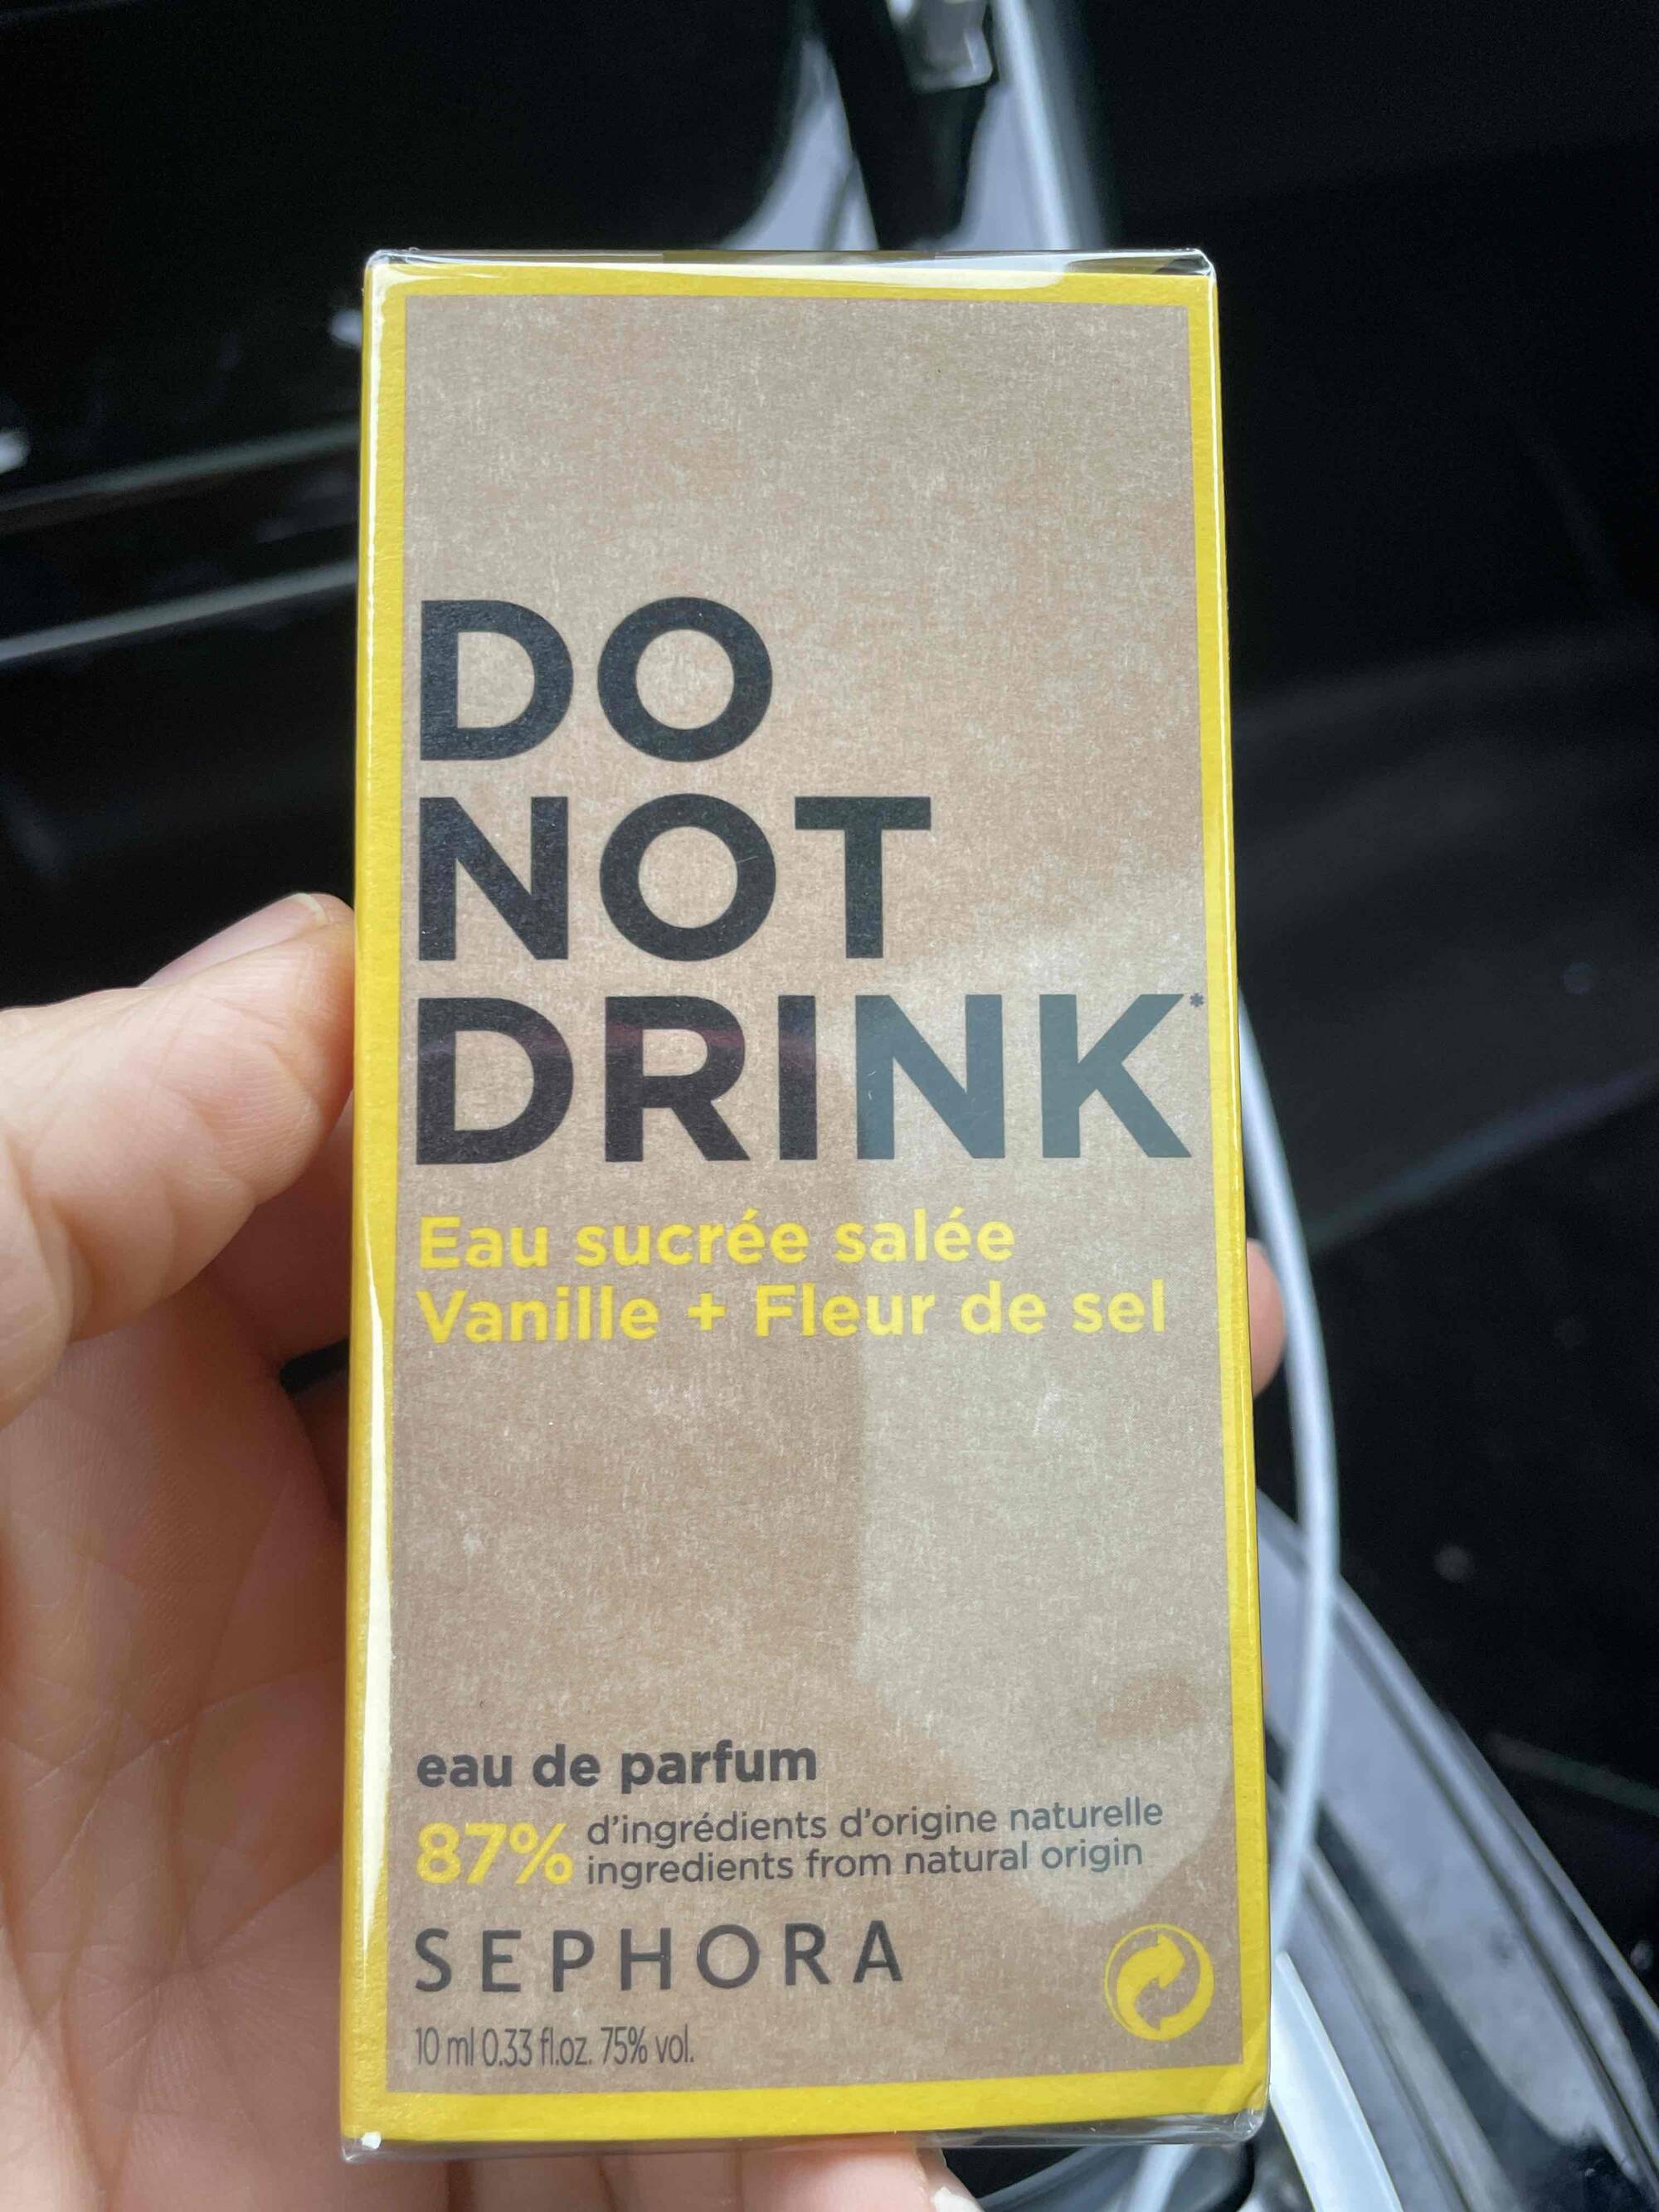 SEPHORA - Do not drink - Eau de parfum sucrée salée vanille+fleur de sel